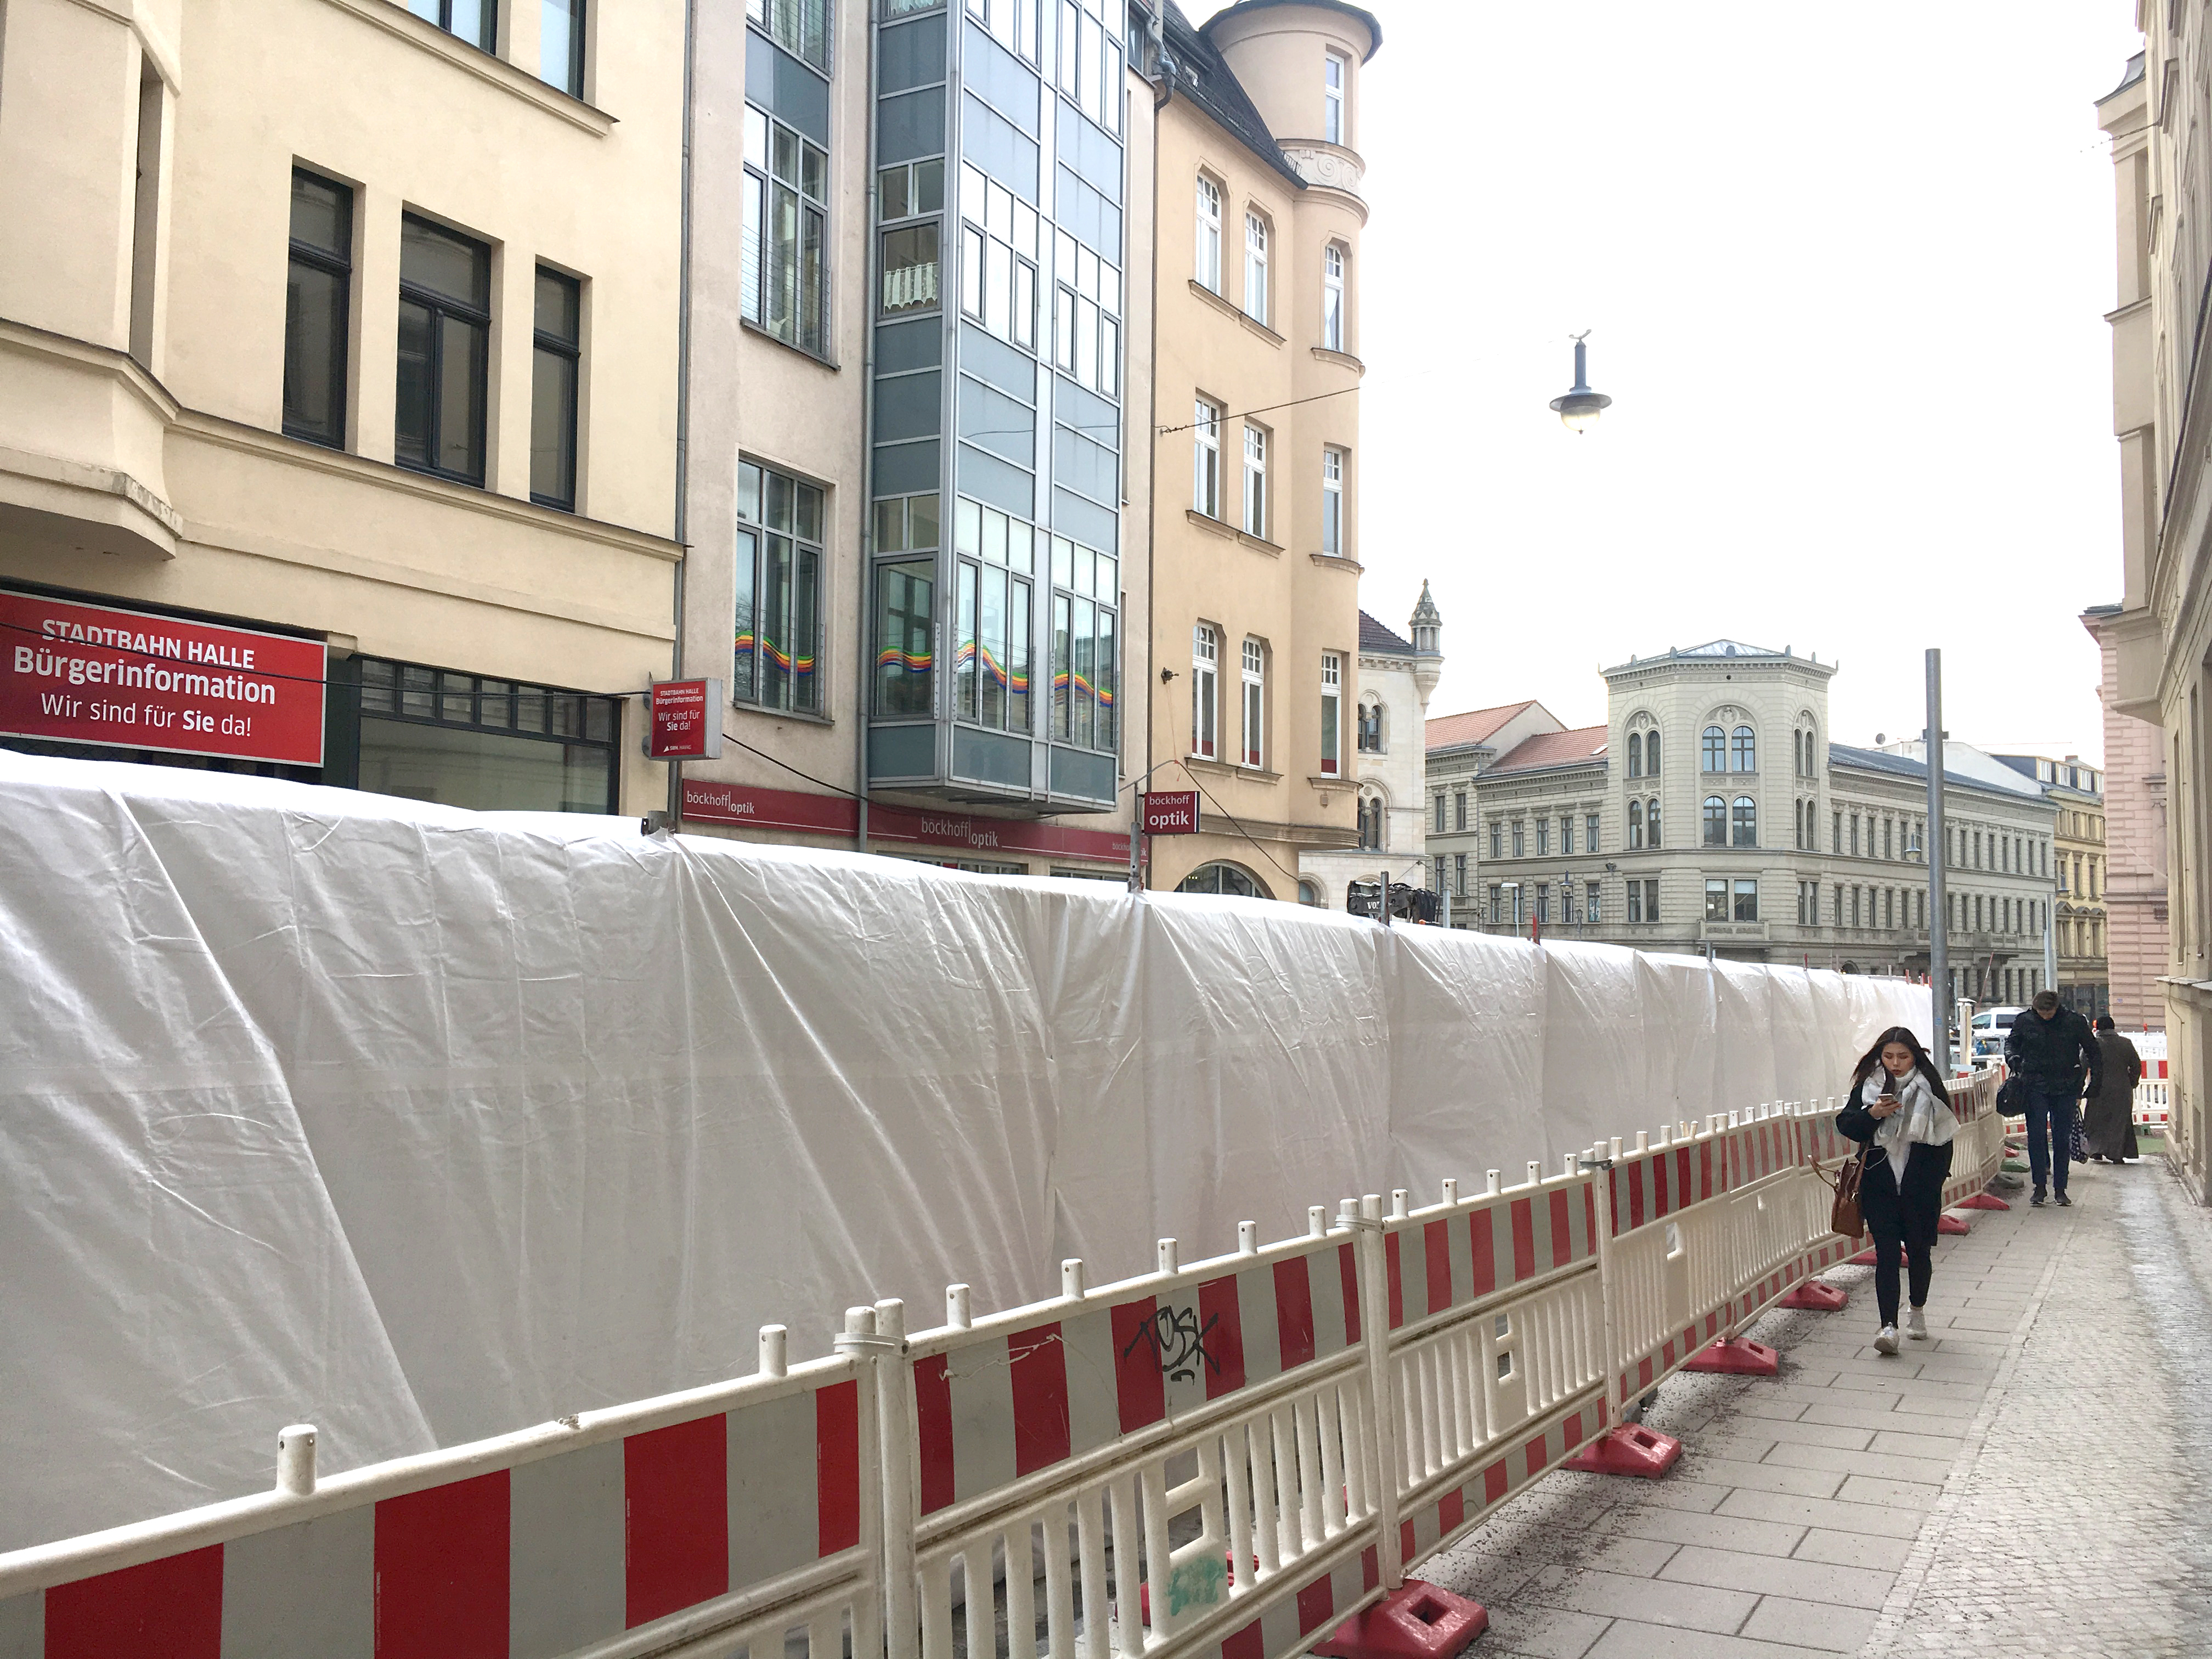 Weiße, beheizte Zelte in der Großen Steinstraße, wohin das Auge blickt. Darunter kann  - trotz Minusgraden - weitergearbeitet werden.